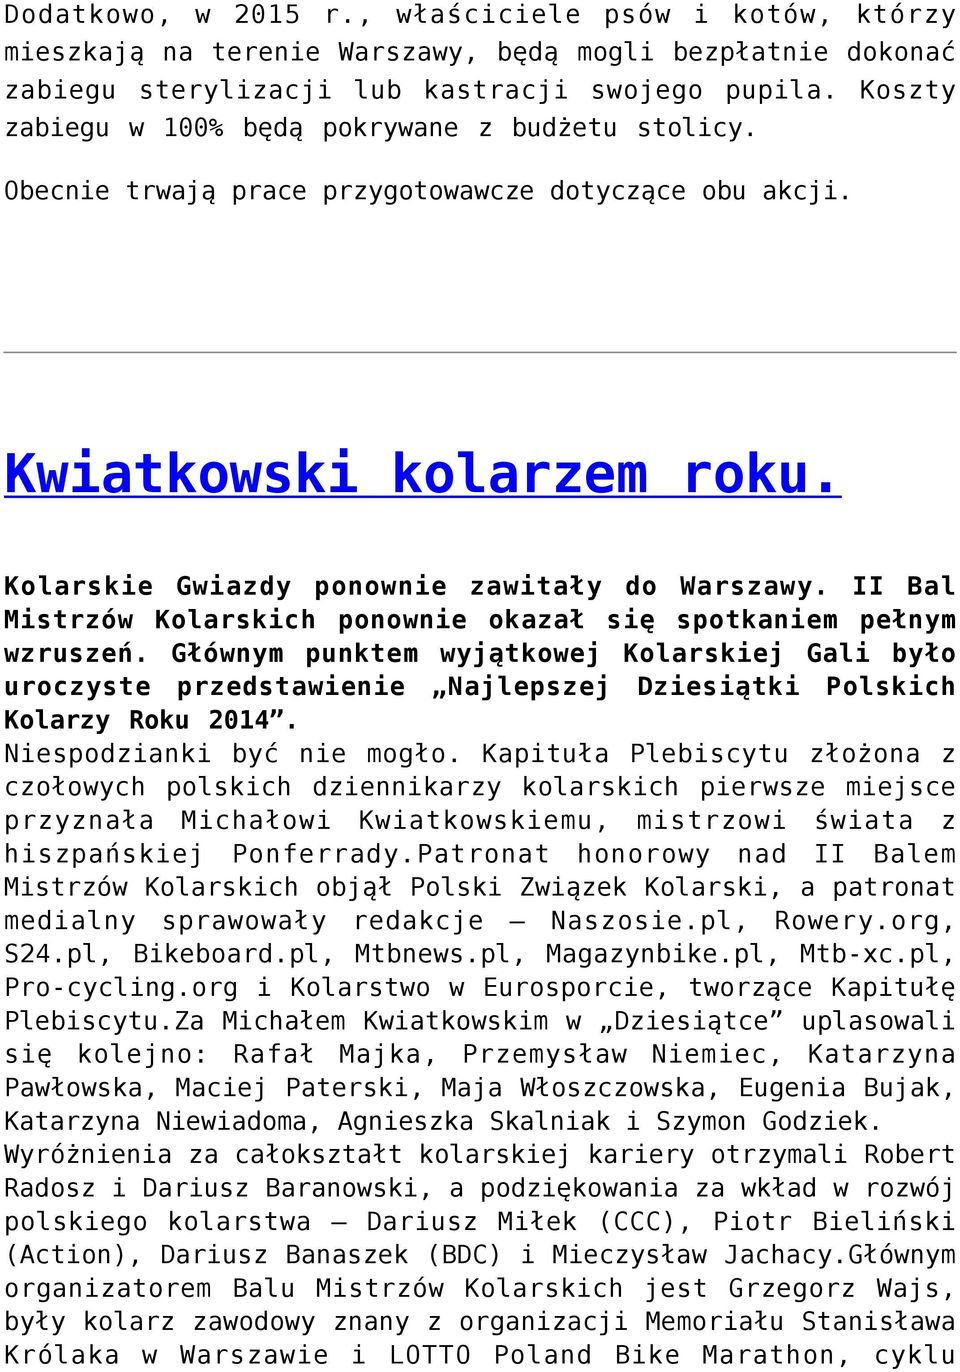 II Bal Mistrzów Kolarskich ponownie okazał się spotkaniem pełnym wzruszeń. Głównym punktem wyjątkowej Kolarskiej Gali było uroczyste przedstawienie Najlepszej Dziesiątki Polskich Kolarzy Roku 2014.